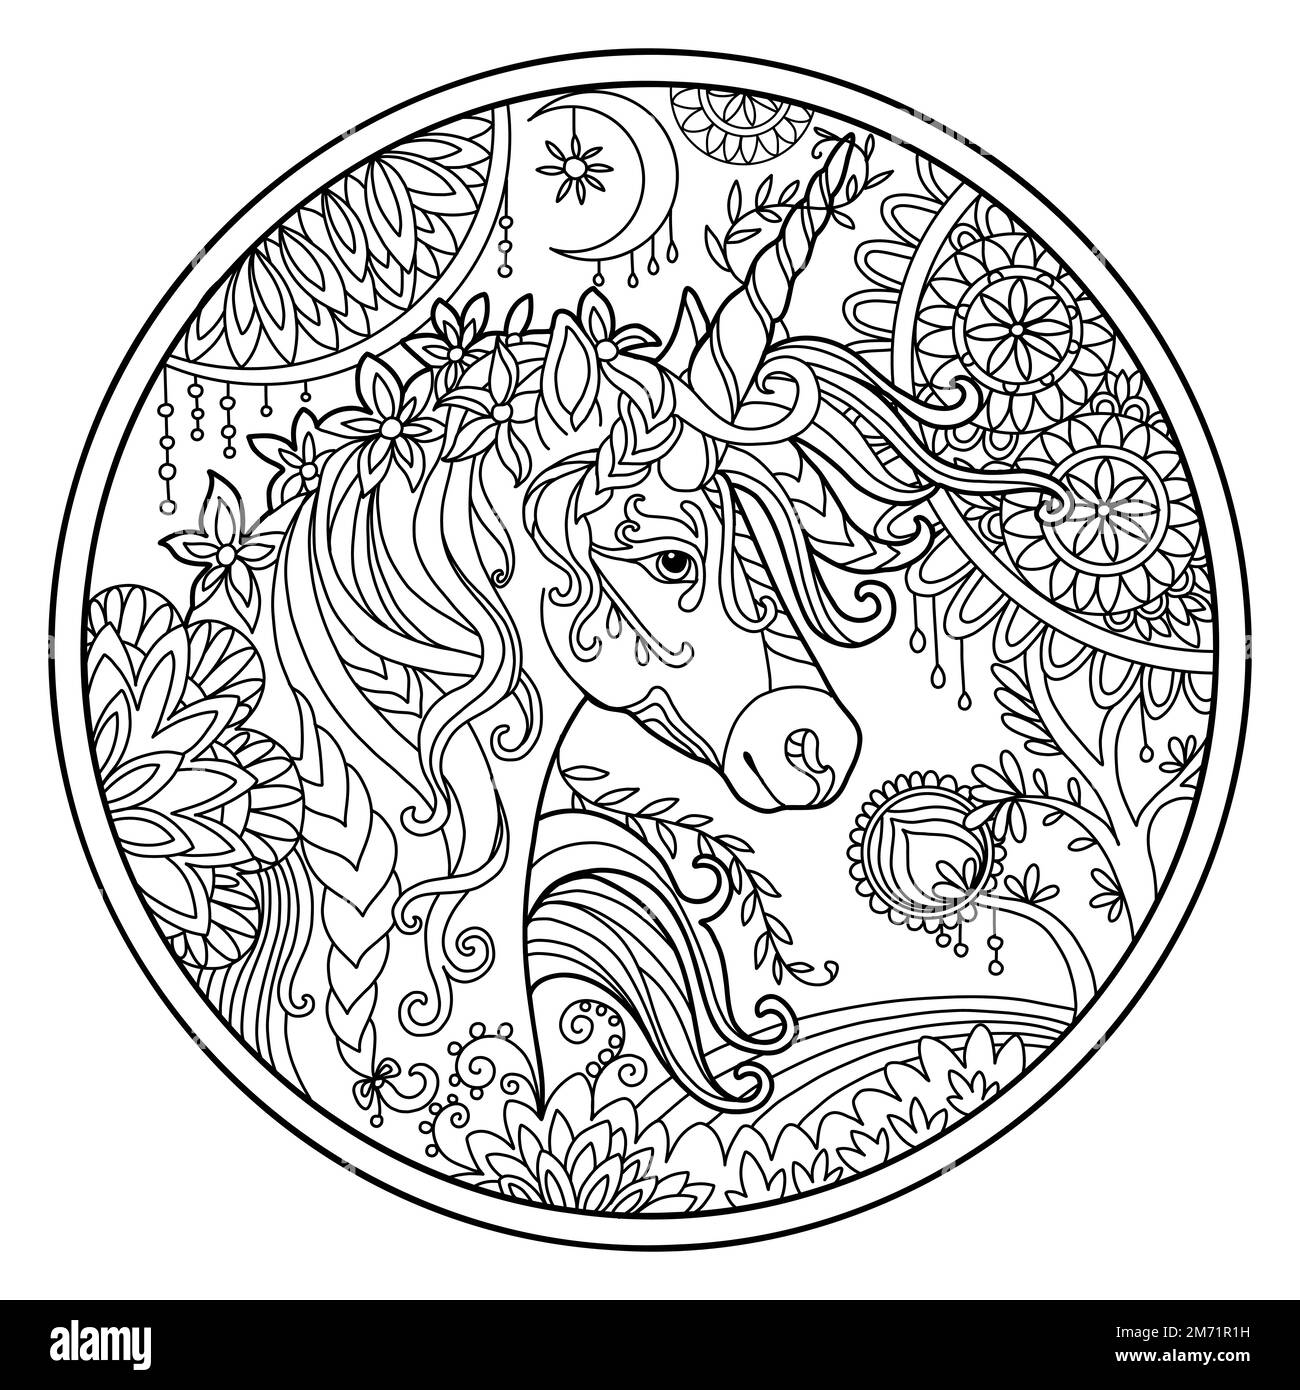 Vettore colorazione pagina libro testa ornata di unicorno con fiori magici, composizione circolare. Disegno di schizzo anti-sollecitazione con elementi grovigli e noodle. Per Illustrazione Vettoriale